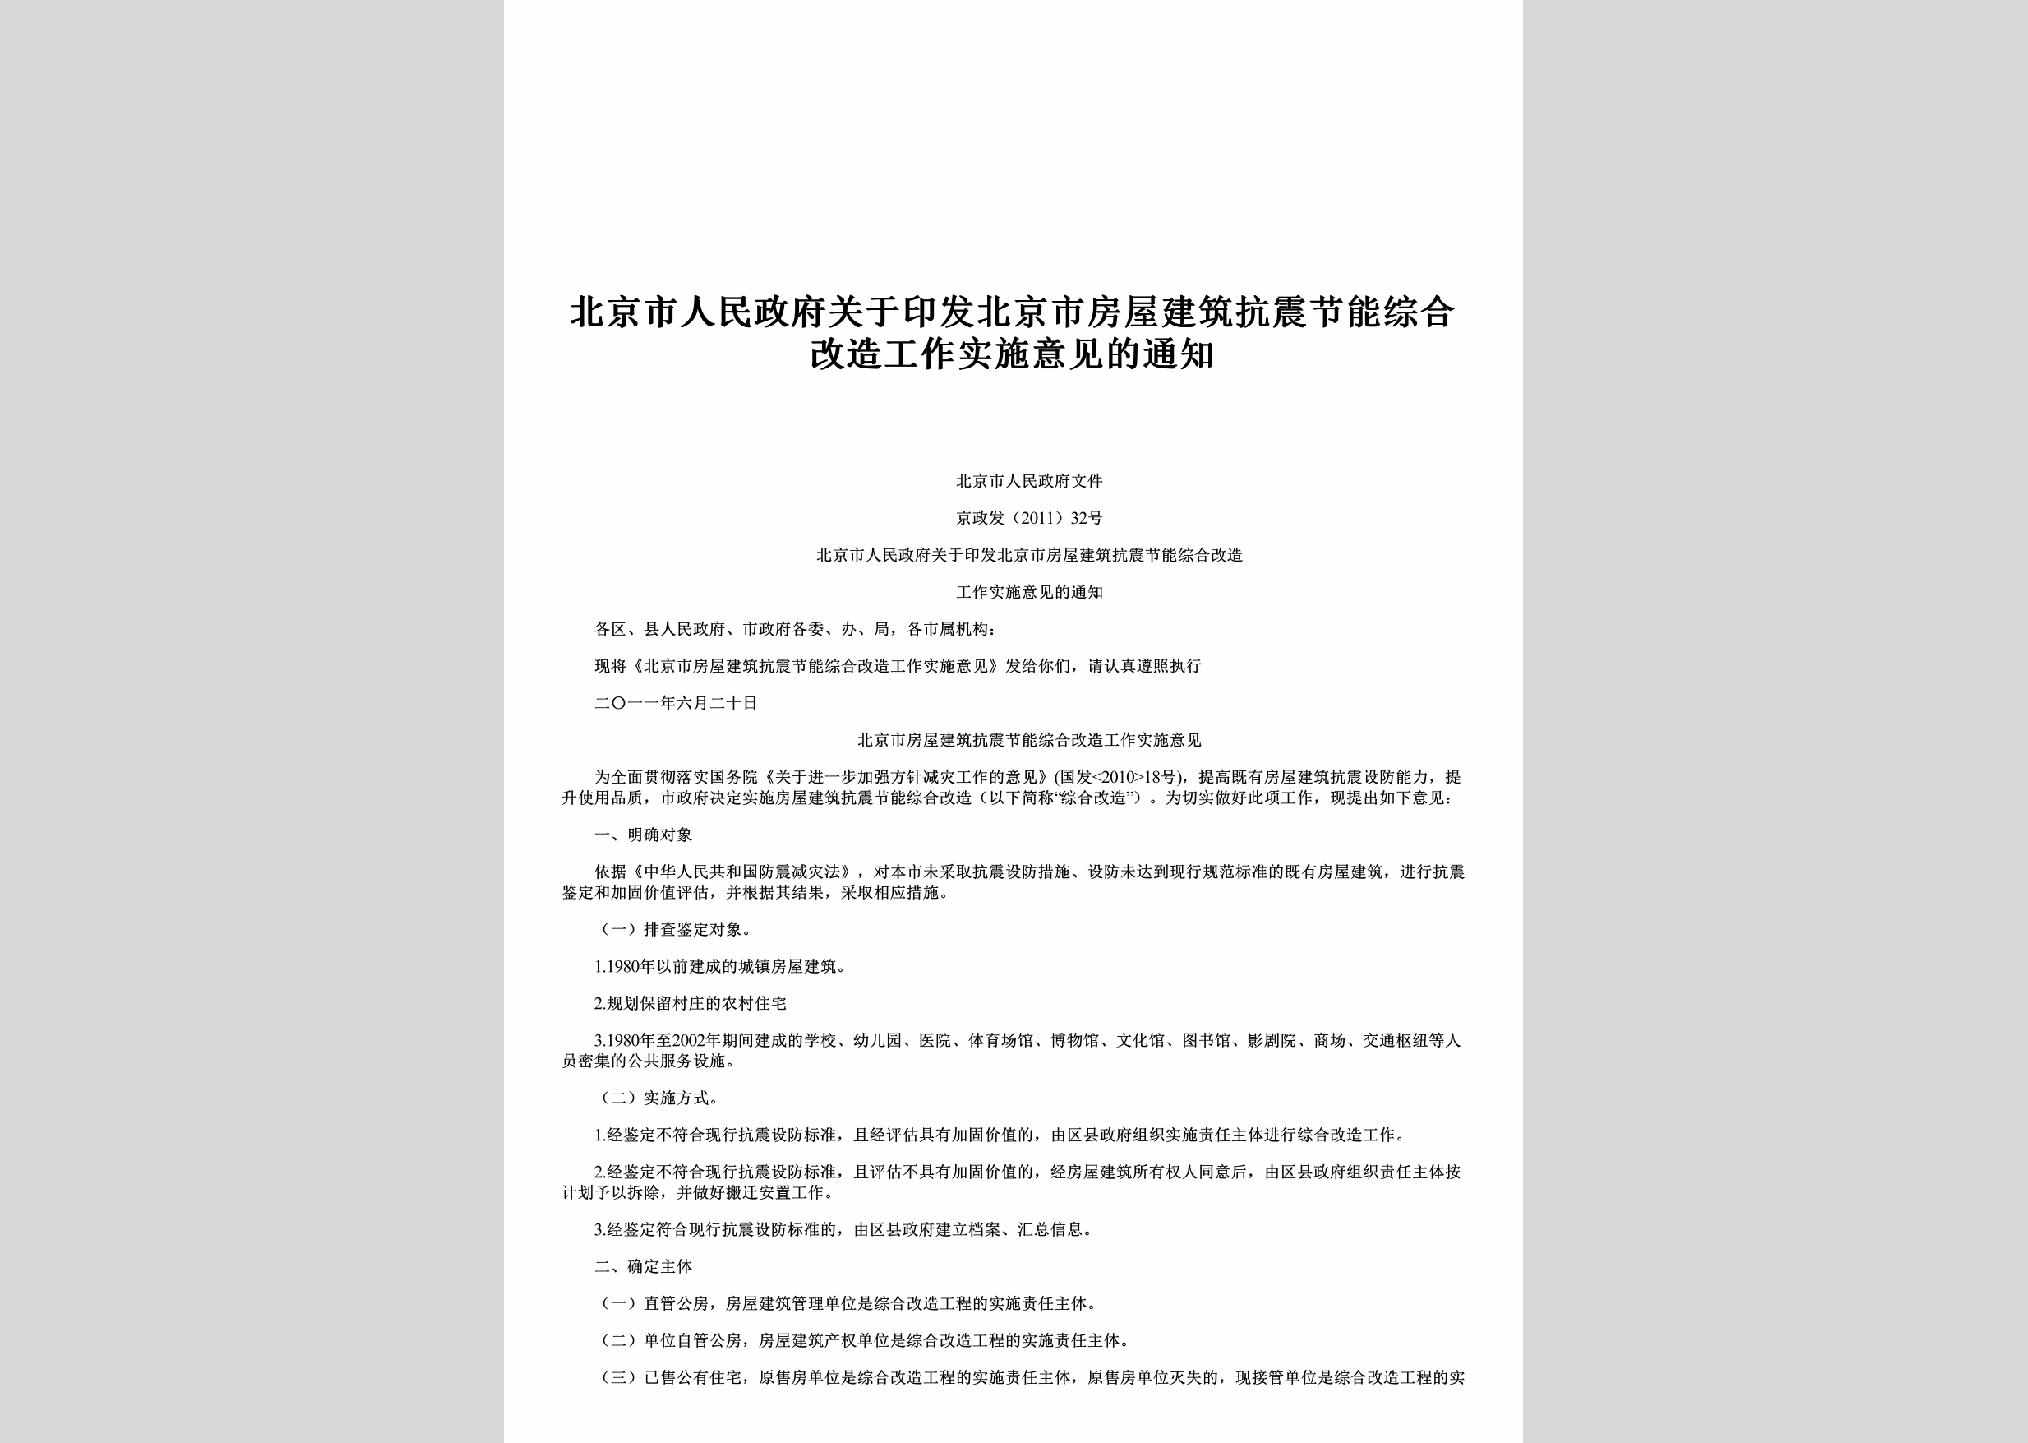 京政发[2011]32号：关于印发北京市房屋建筑抗震节能综合改造工作实施意见的通知